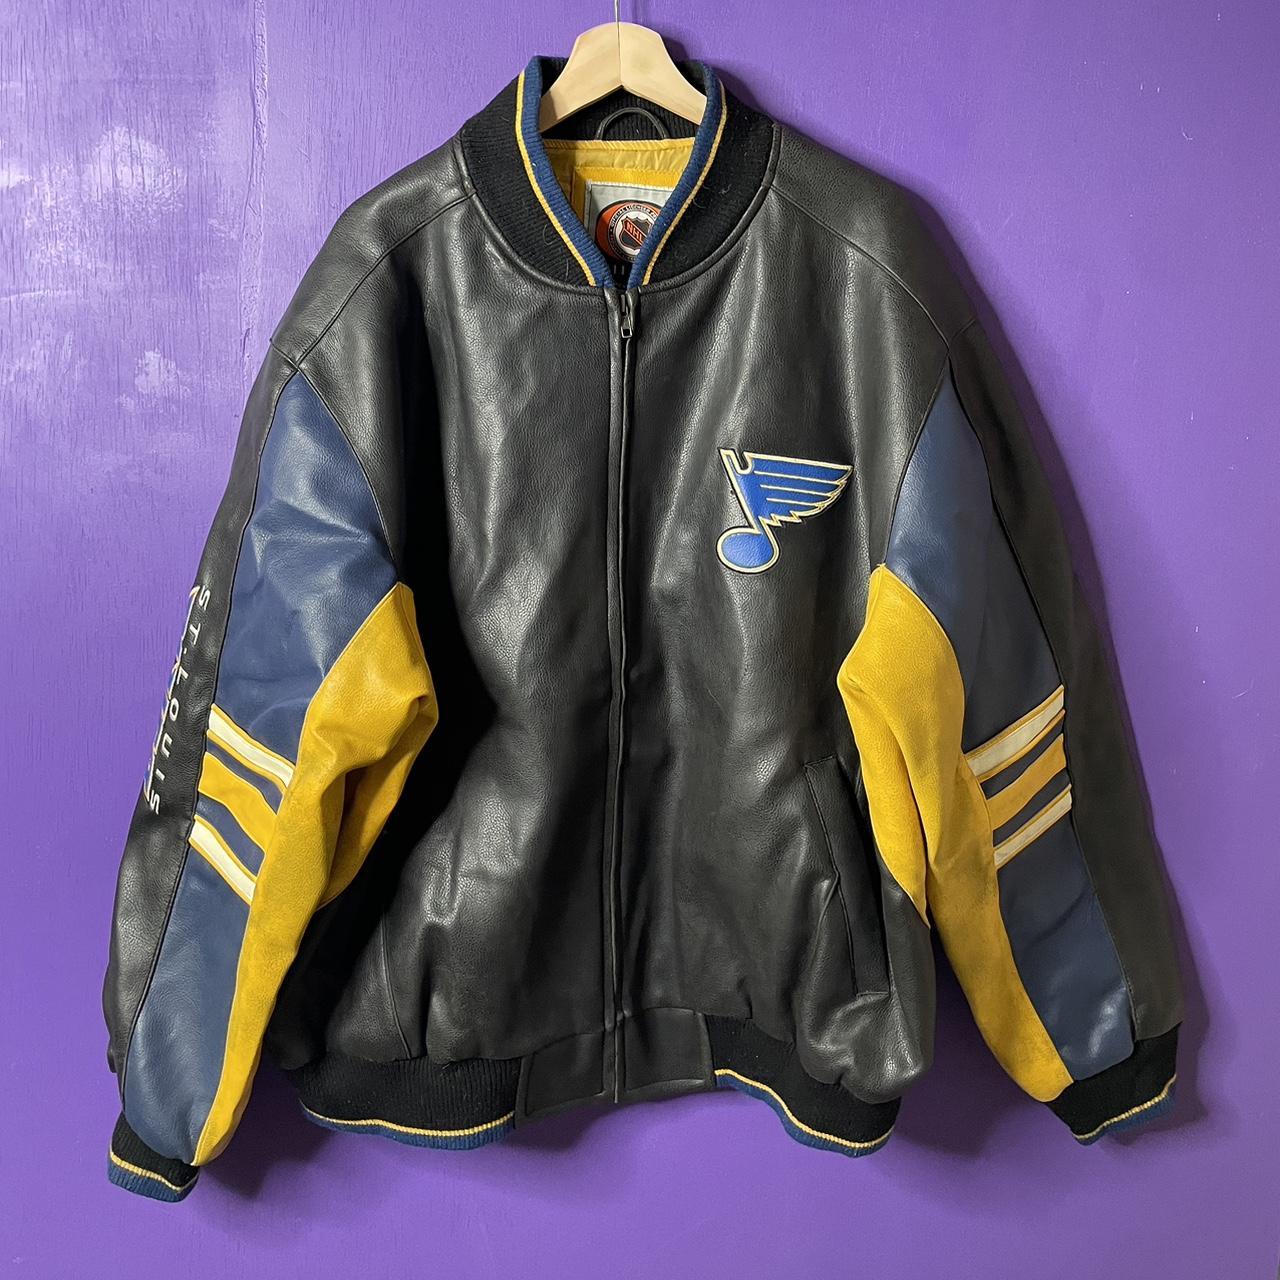 Jackets & Coats, Varsity Saint Louis Blues Hockey Team Jacket